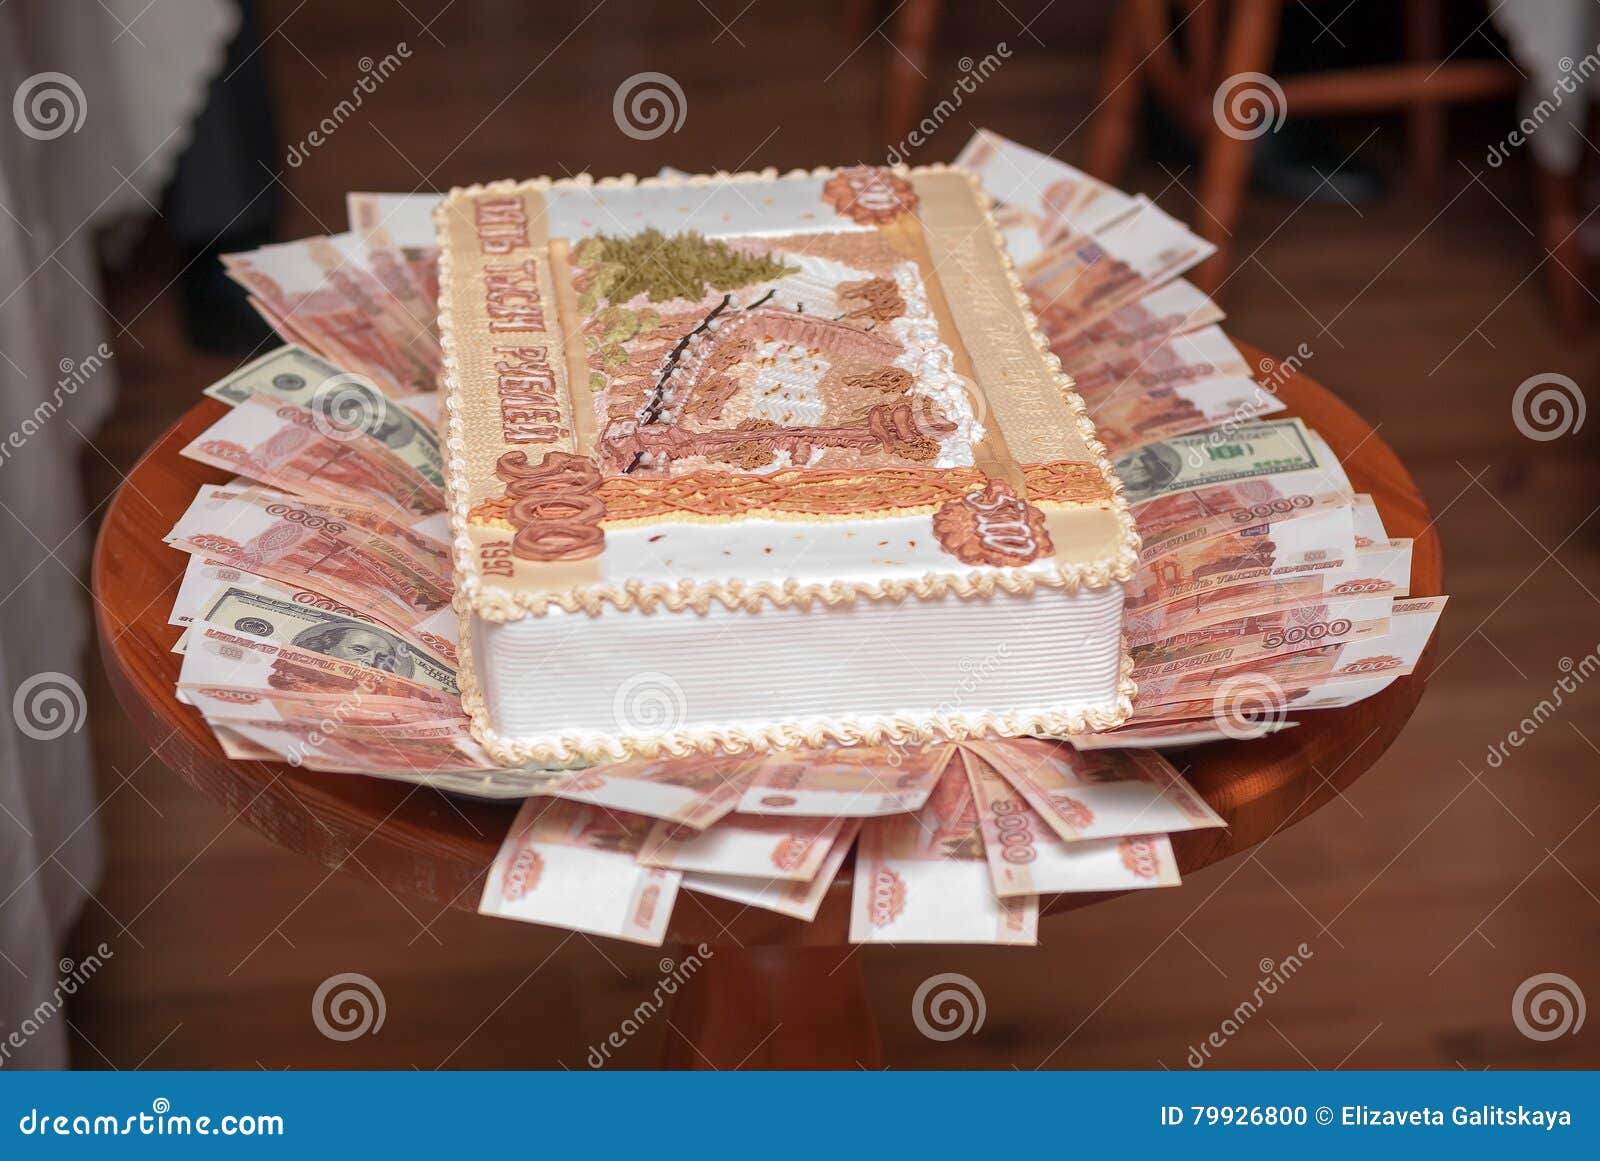 День рождение на 5000 рублей. Торт с деньгами. Торт с купюрами. Торт в виде денег. Торт с пятитысячными купюрами.